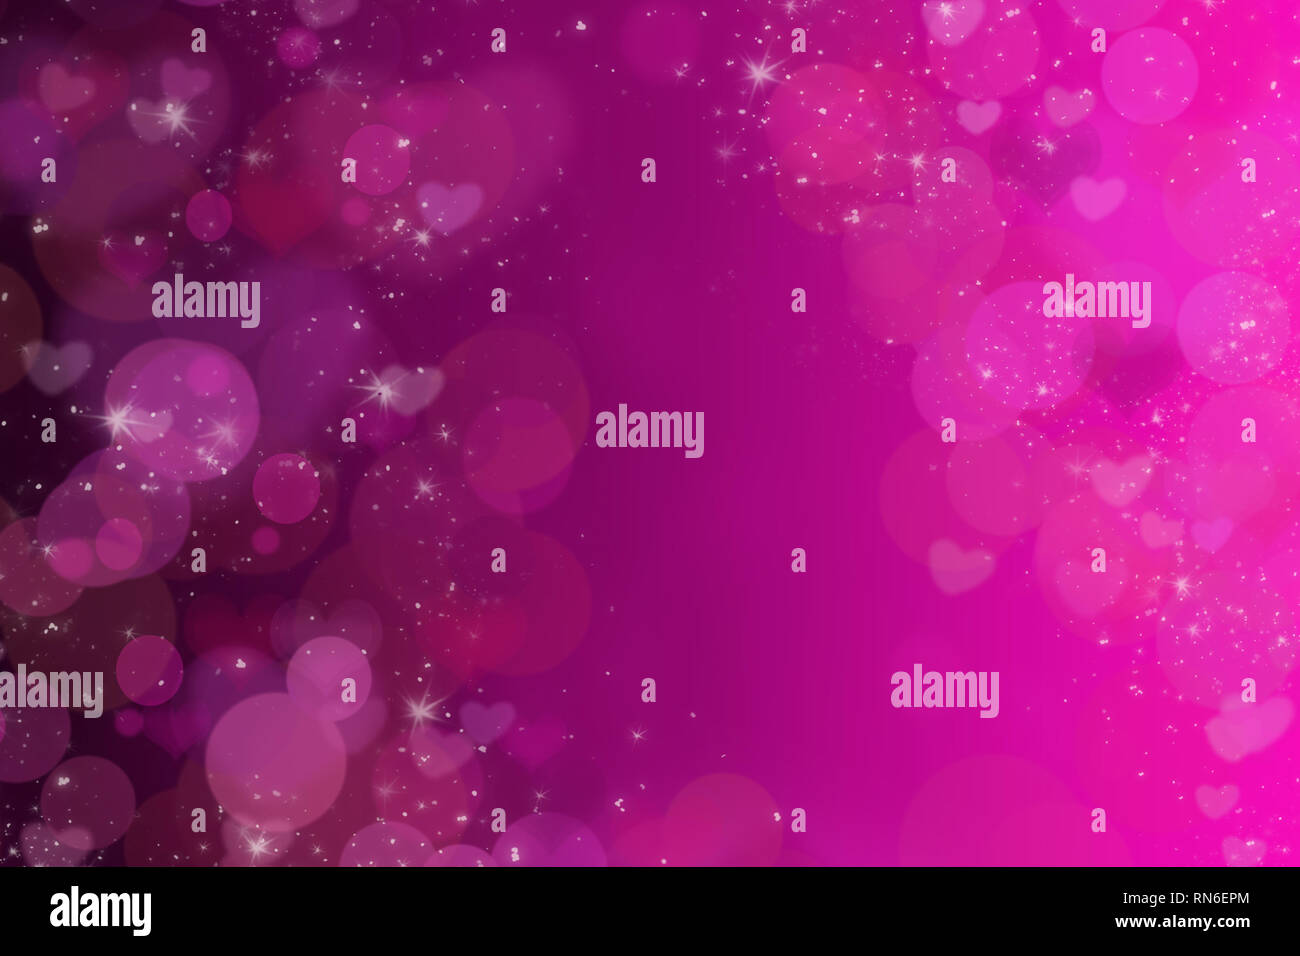 Zusammenfassung Hintergrund in rosa und violetten Tönen. Bokeh und funkelnde Effekte. Valentinstag grüße Postkarte. Lover's Tag. Herzen. Stockfoto